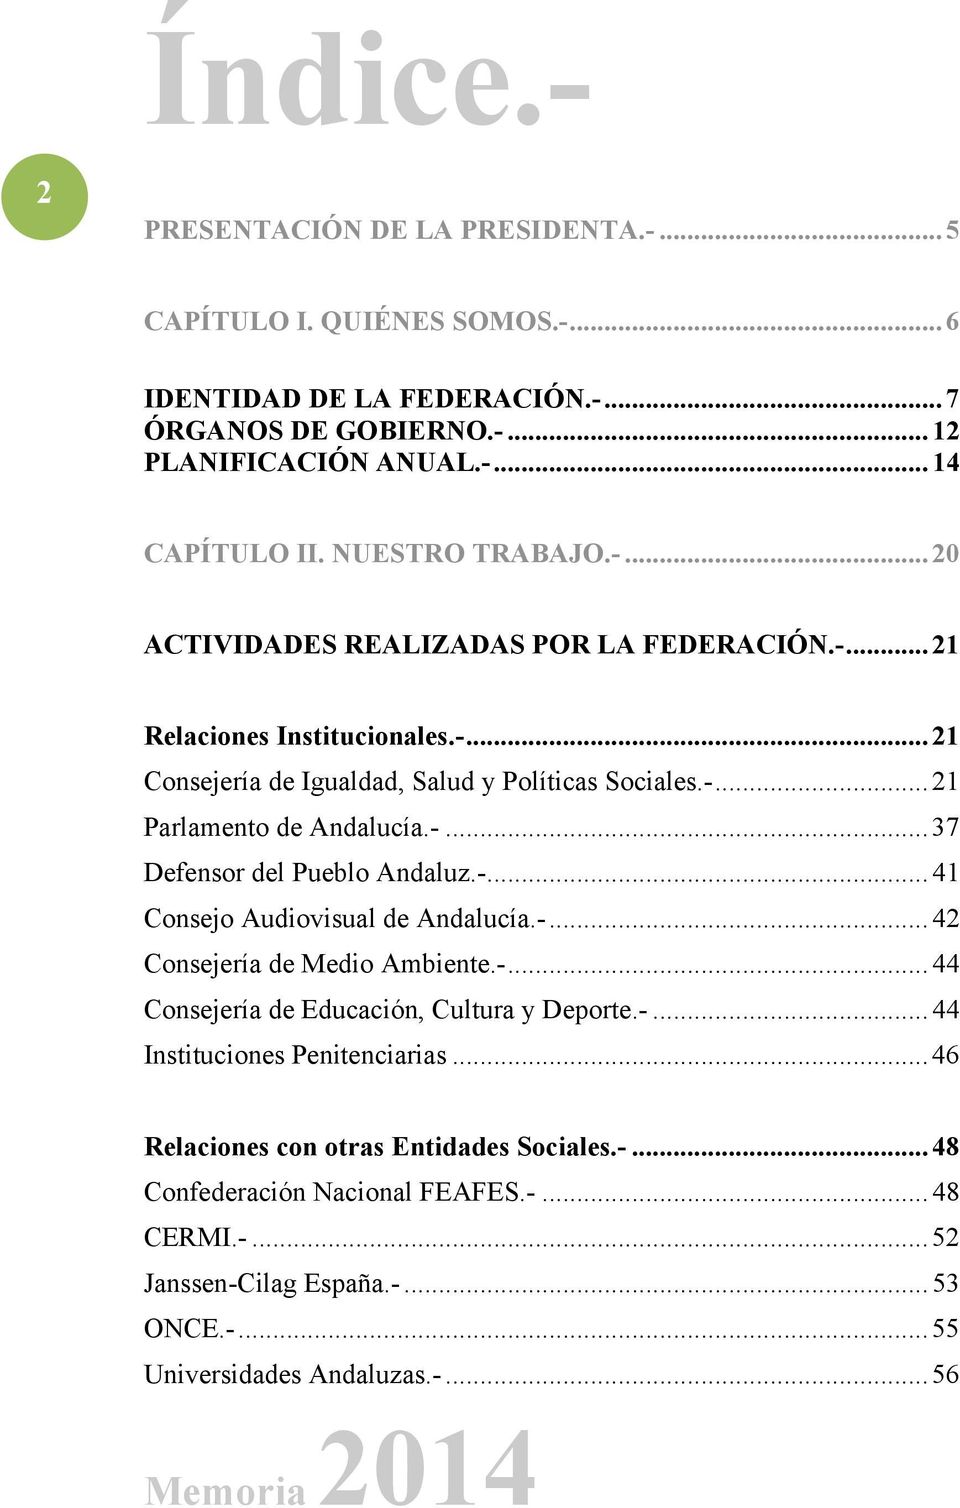 -... 37 Defensor del Pueblo Andaluz.-... 41 Consejo Audiovisual de Andalucía.-... 42 Consejería de Medio Ambiente.-... 44 Consejería de Educación, Cultura y Deporte.-... 44 Instituciones Penitenciarias.